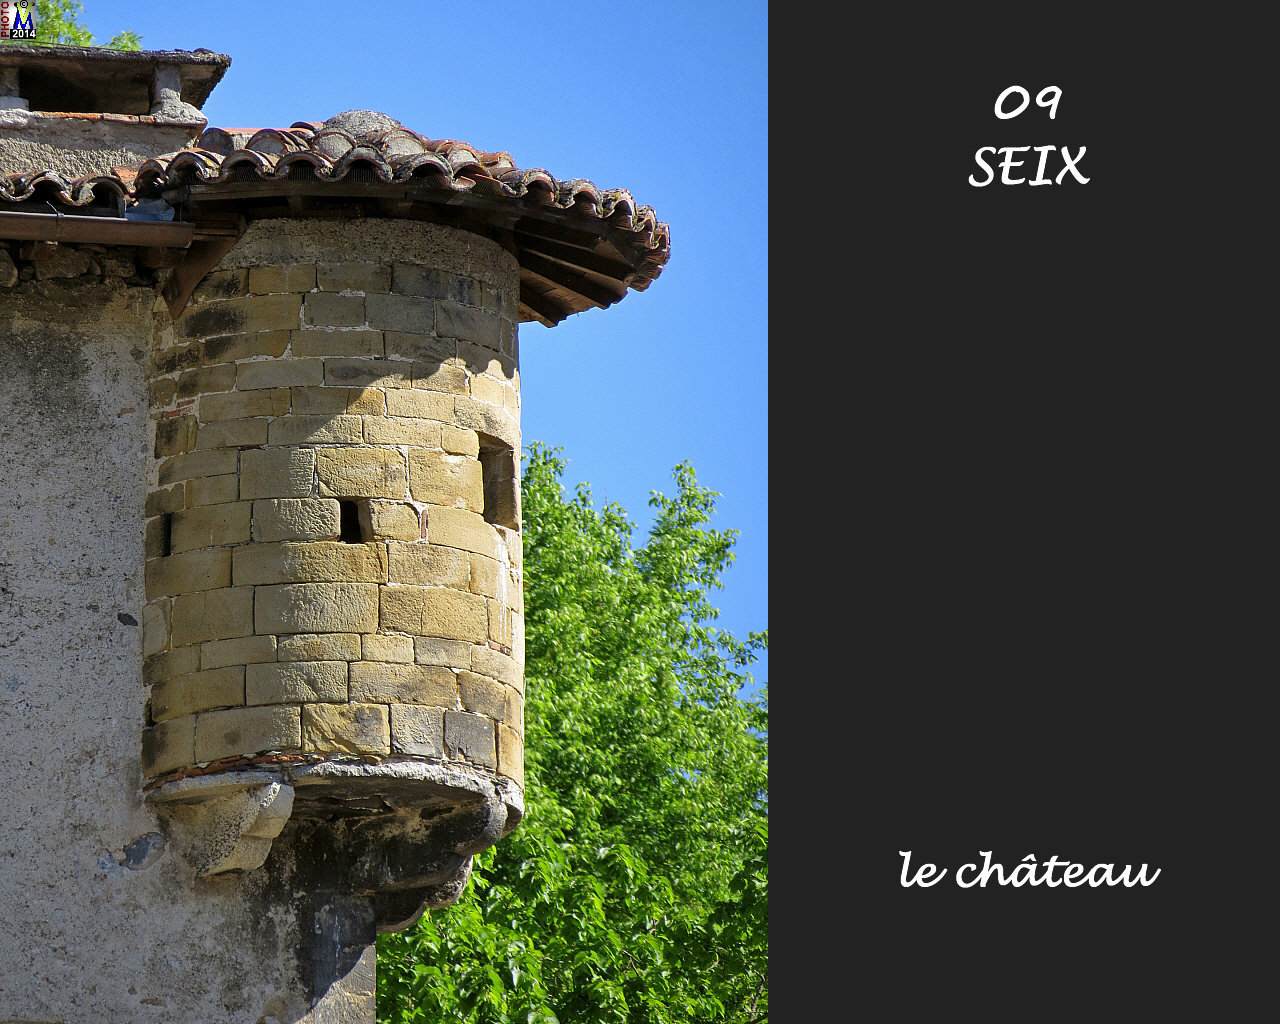 09SEIX_chateau_110.jpg